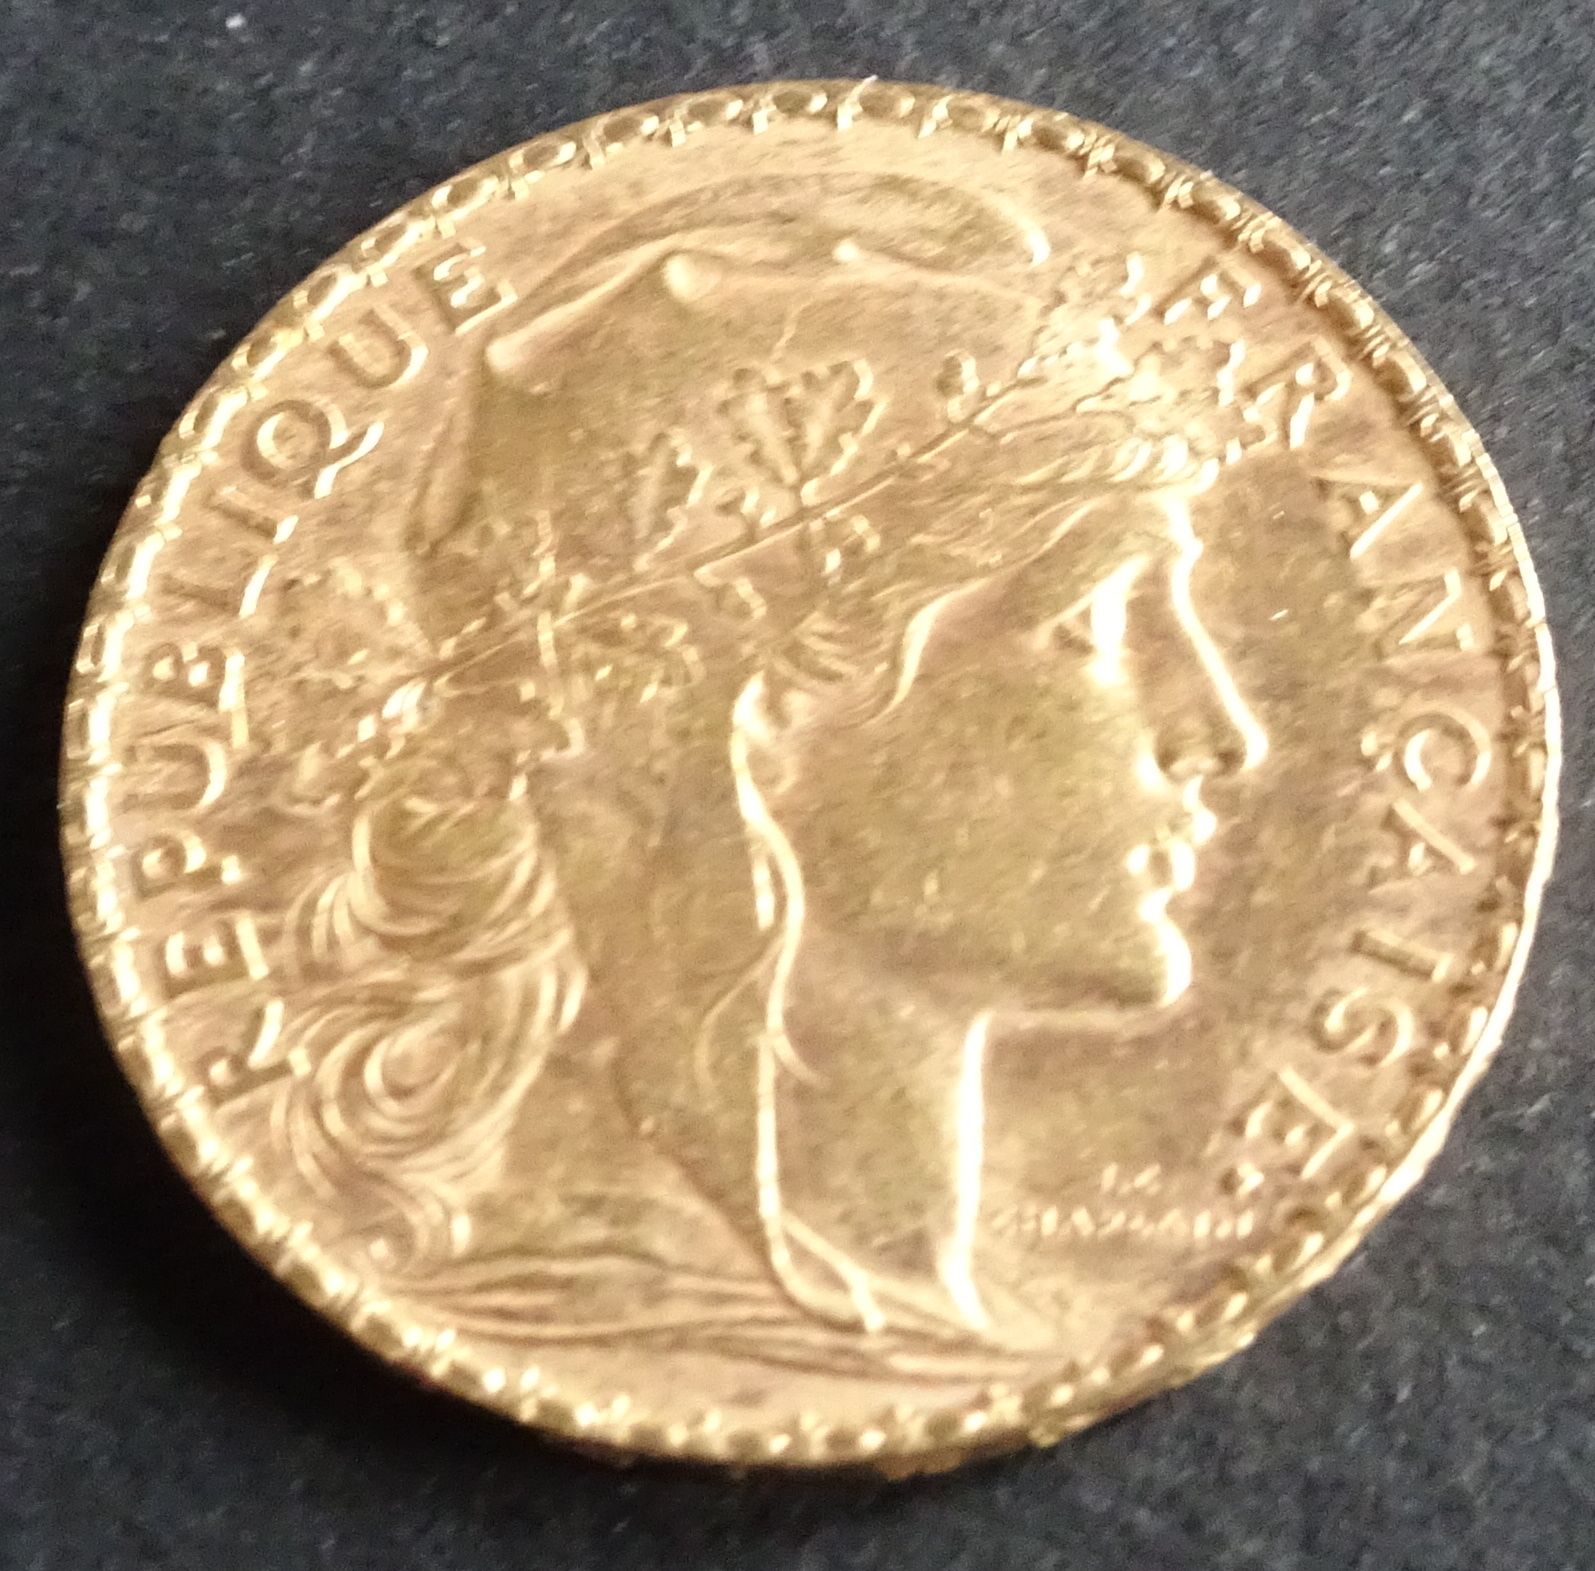 Null Moneda de oro. Moneda de oro de 20 francos con gallo, 1903.
Peso : 6,47 g.